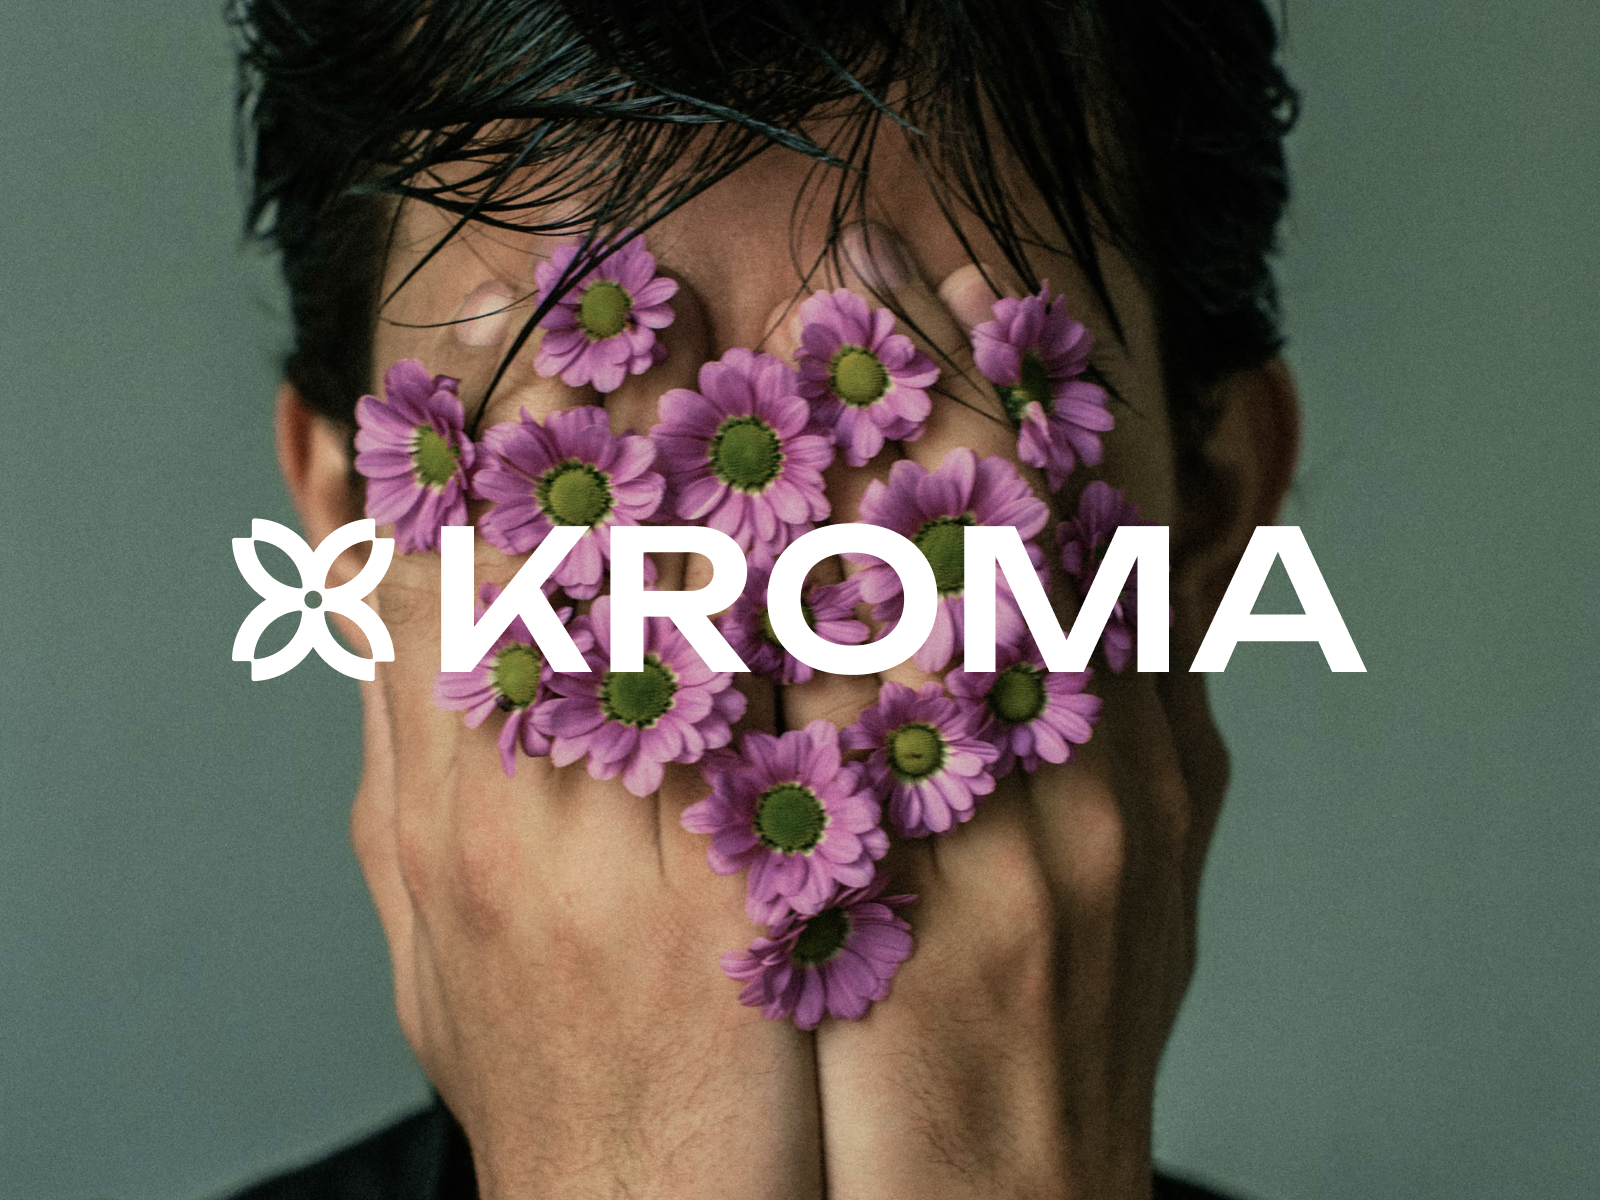 Kroma - Framer Agency Template